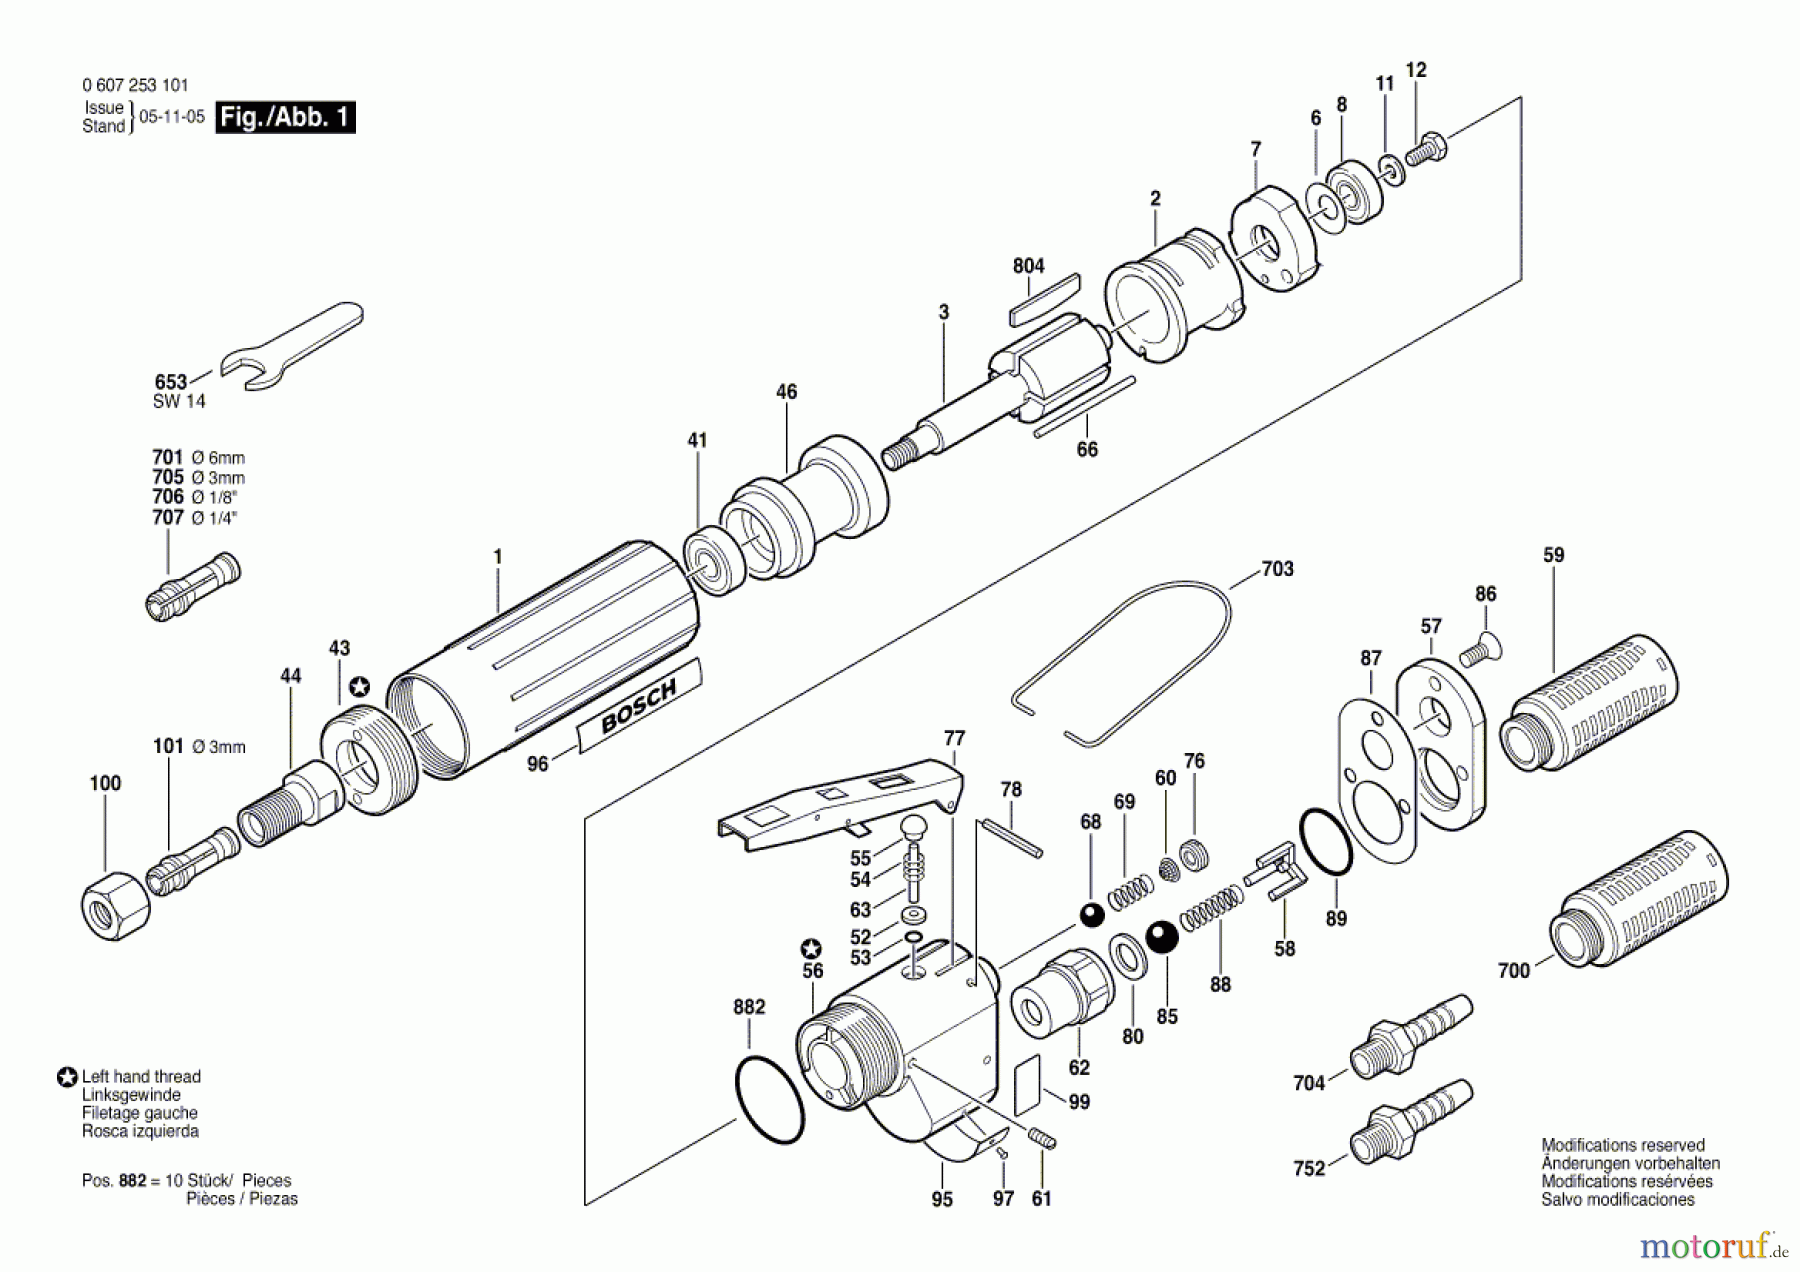  Bosch Werkzeug Pw-Geradschleifer 180 WATT-SERIE Seite 1